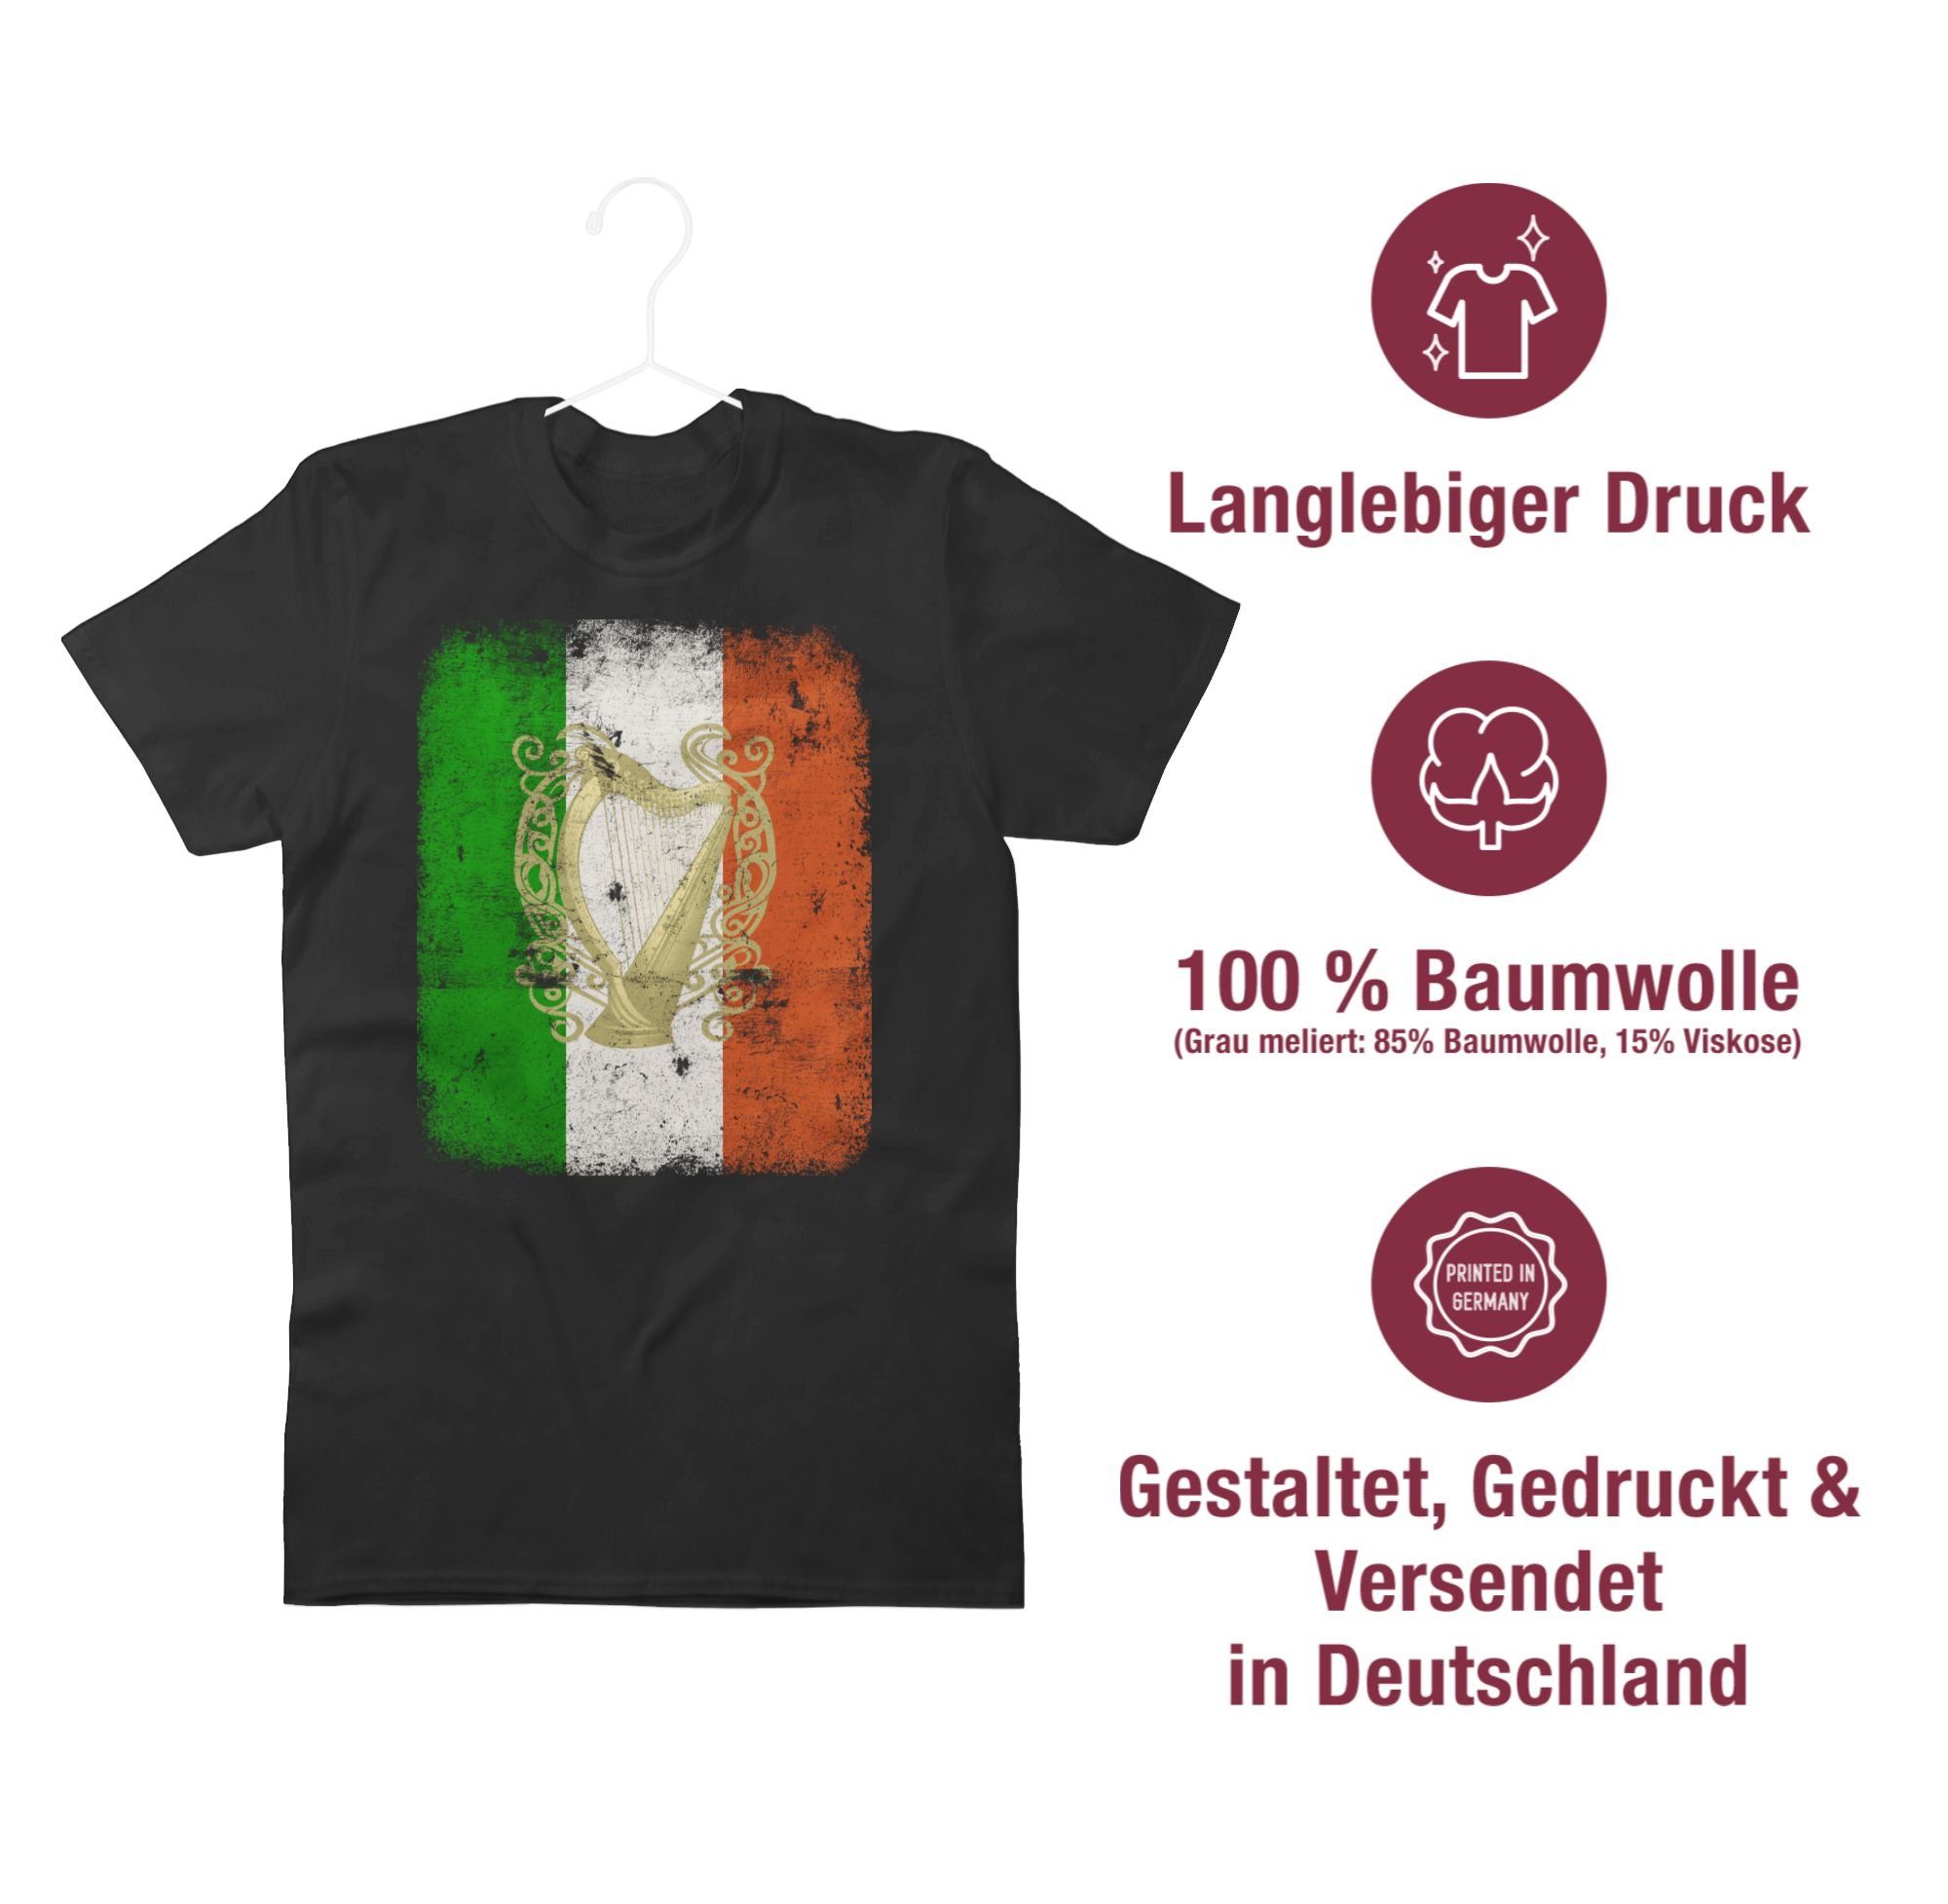 St. Shirtracer Schwarz Day Flagge T-Shirt Irland Patricks Irische Flag 01 Irish